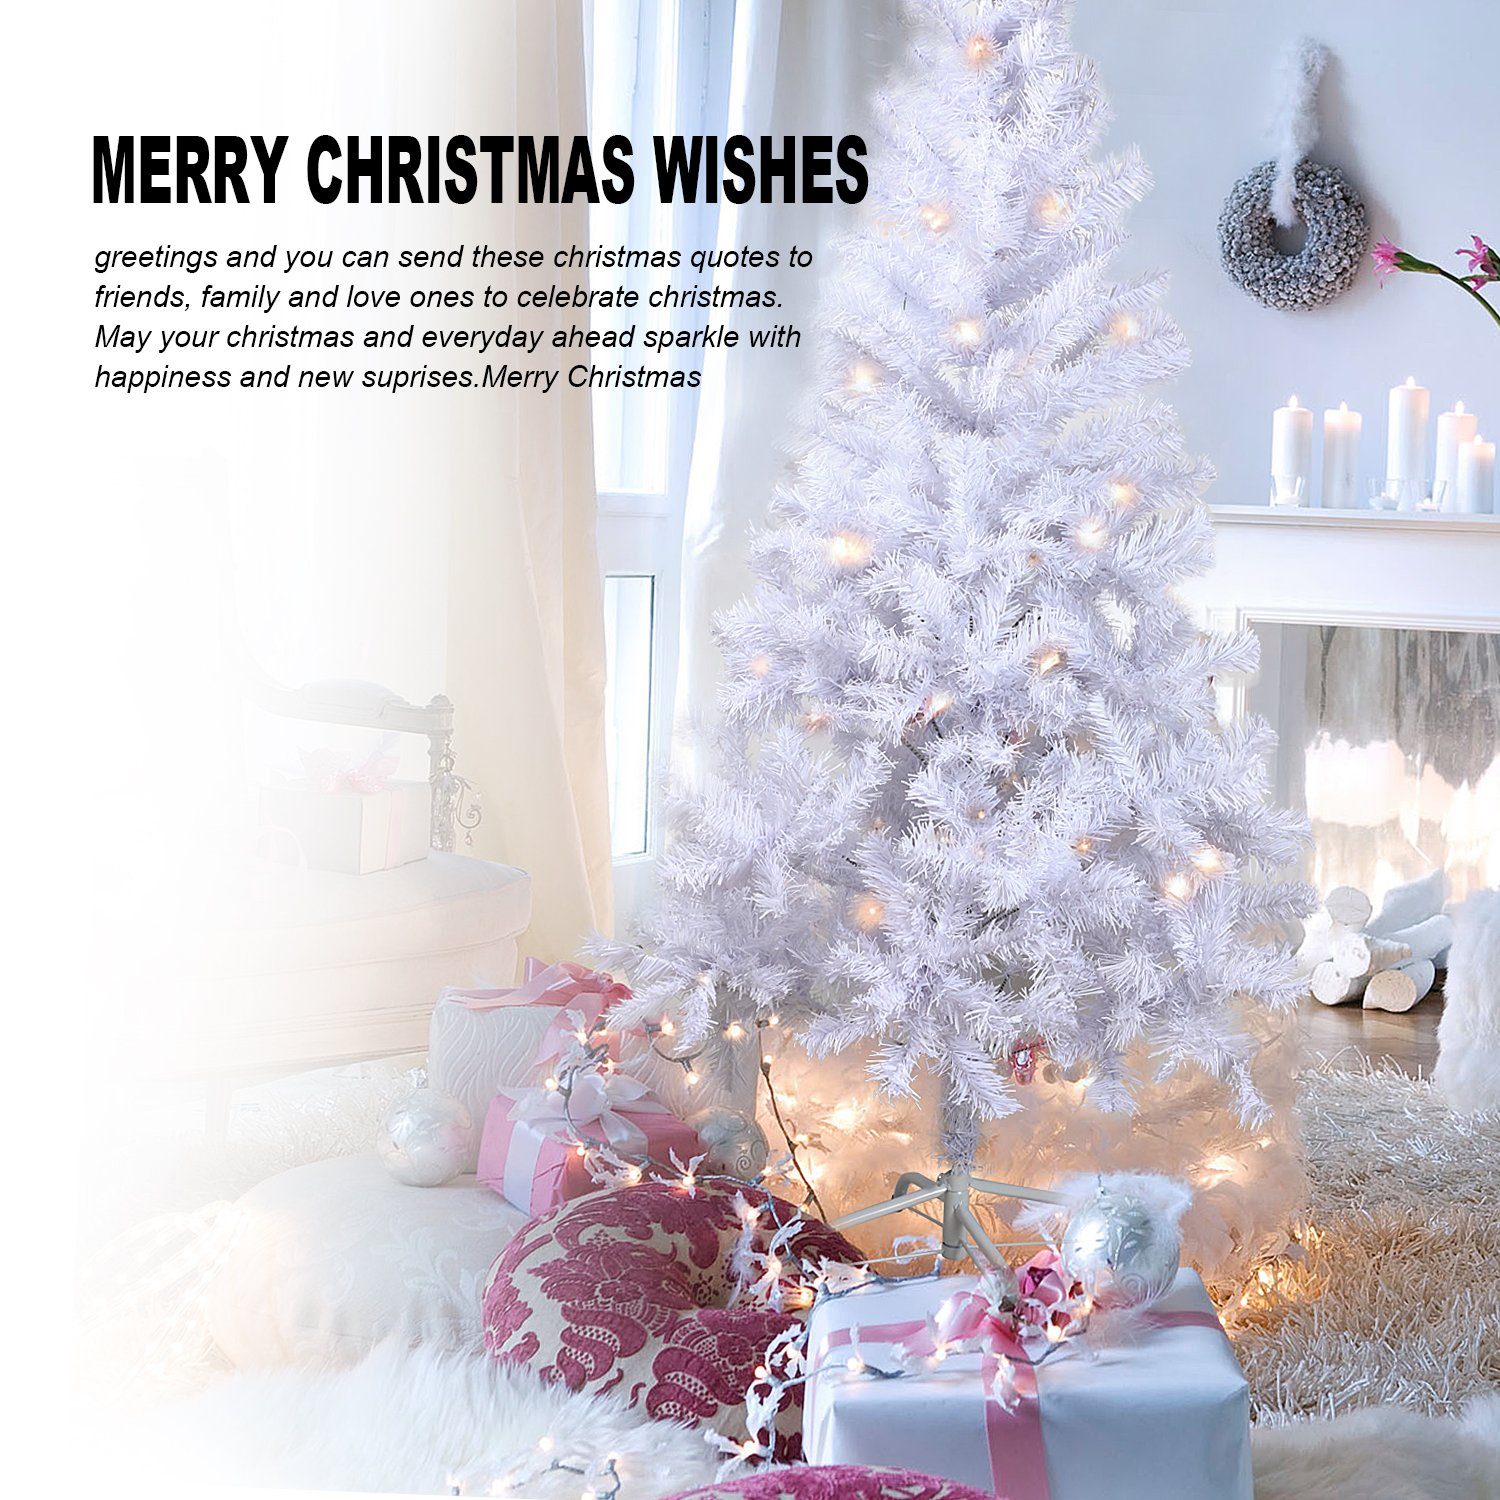 Weihnachtsbaum Tannenbaum Weiß Künstlicher künstlicher Weihnachtsbaum Christbaum Gotoll XM007-10, Metallständer